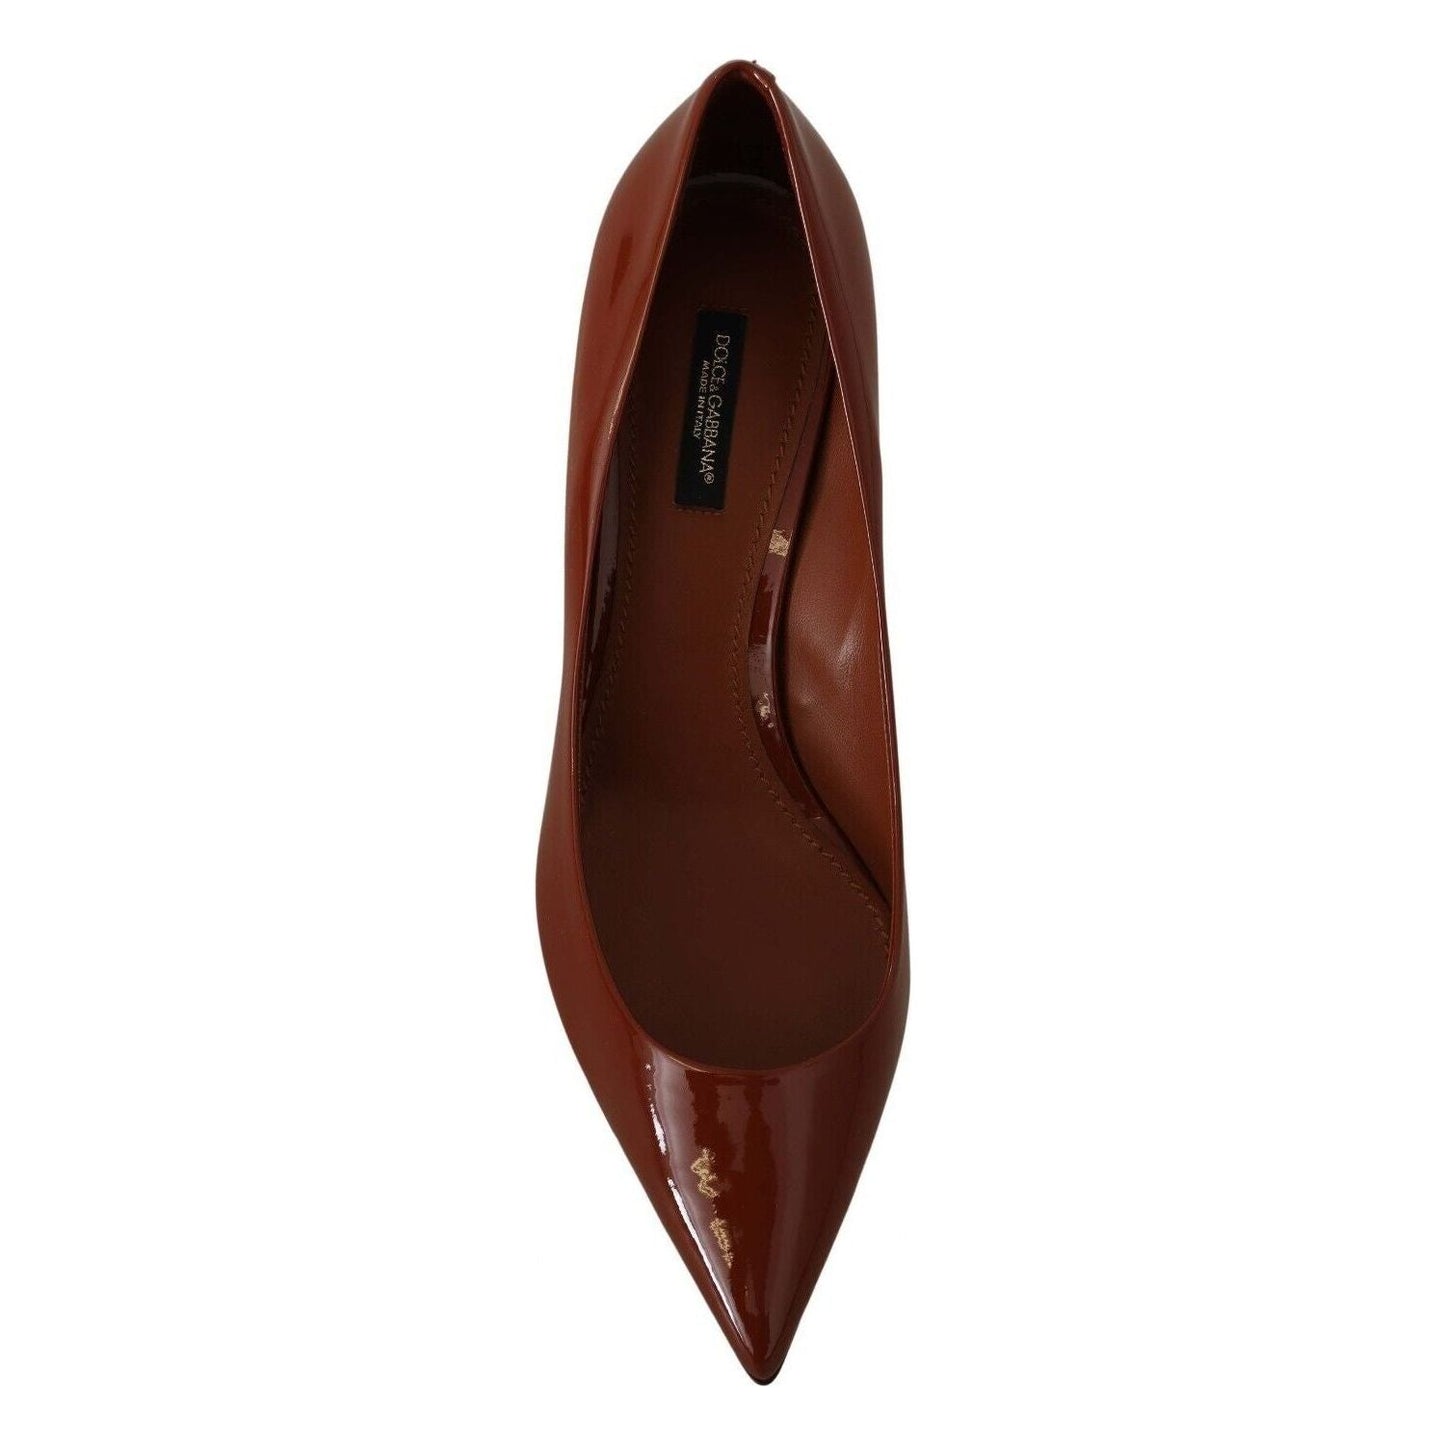 Dolce & Gabbana Elegant Patent Leather Heels Pumps brown-kitten-heels-pumps-patent-leather-shoes s-l1600-6-26-d74f5a5b-765.jpg